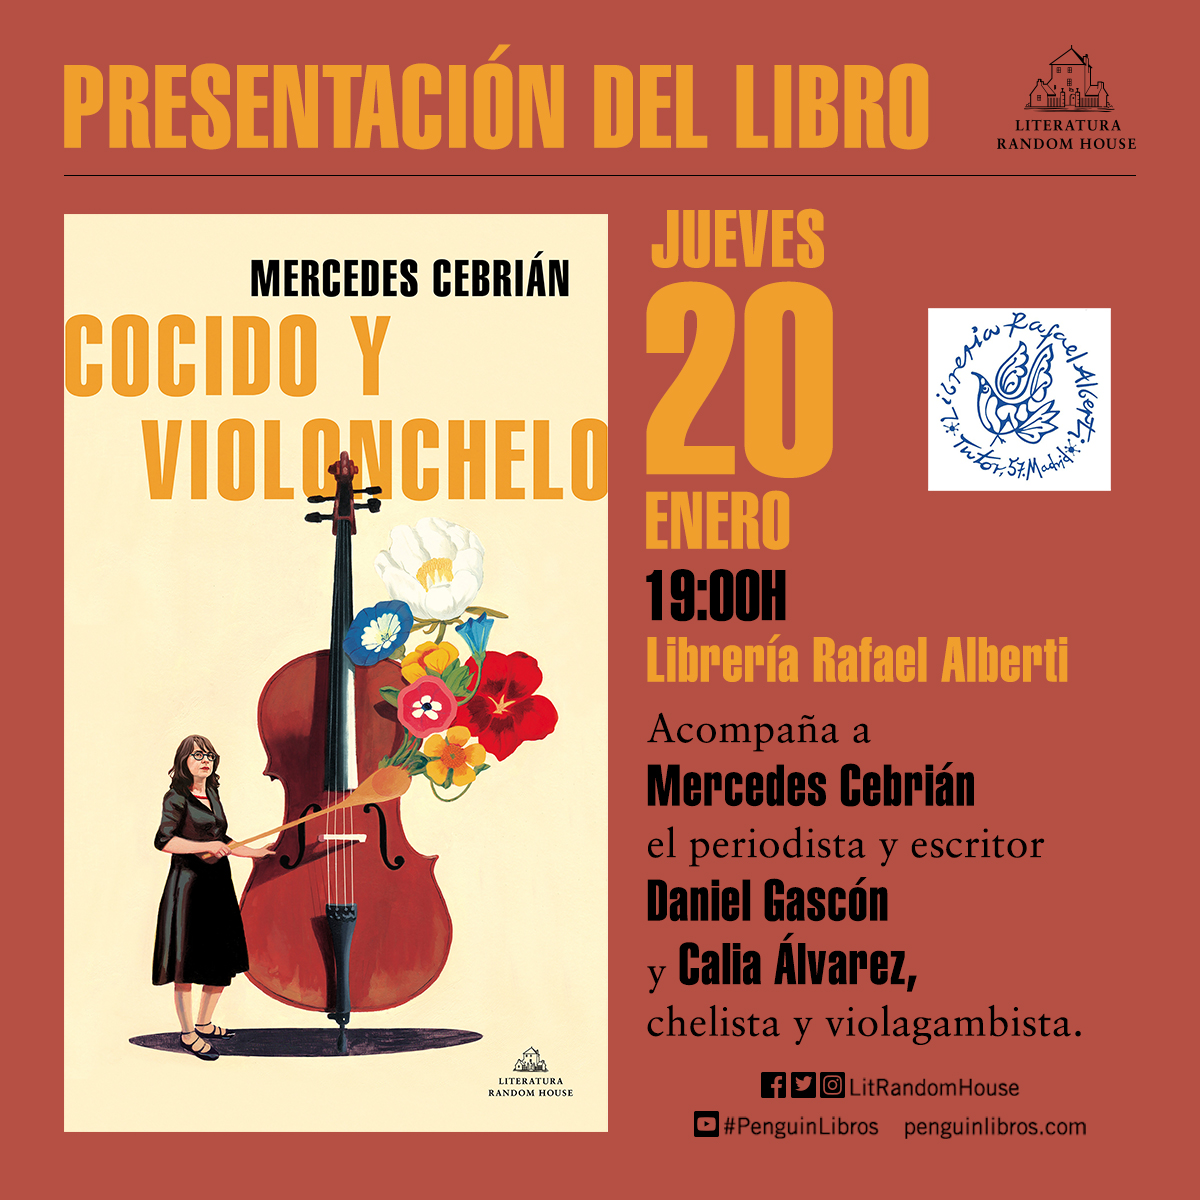 MERCEDES CEBRIÁN, Cocido y violonchelo (Literatura Random House)